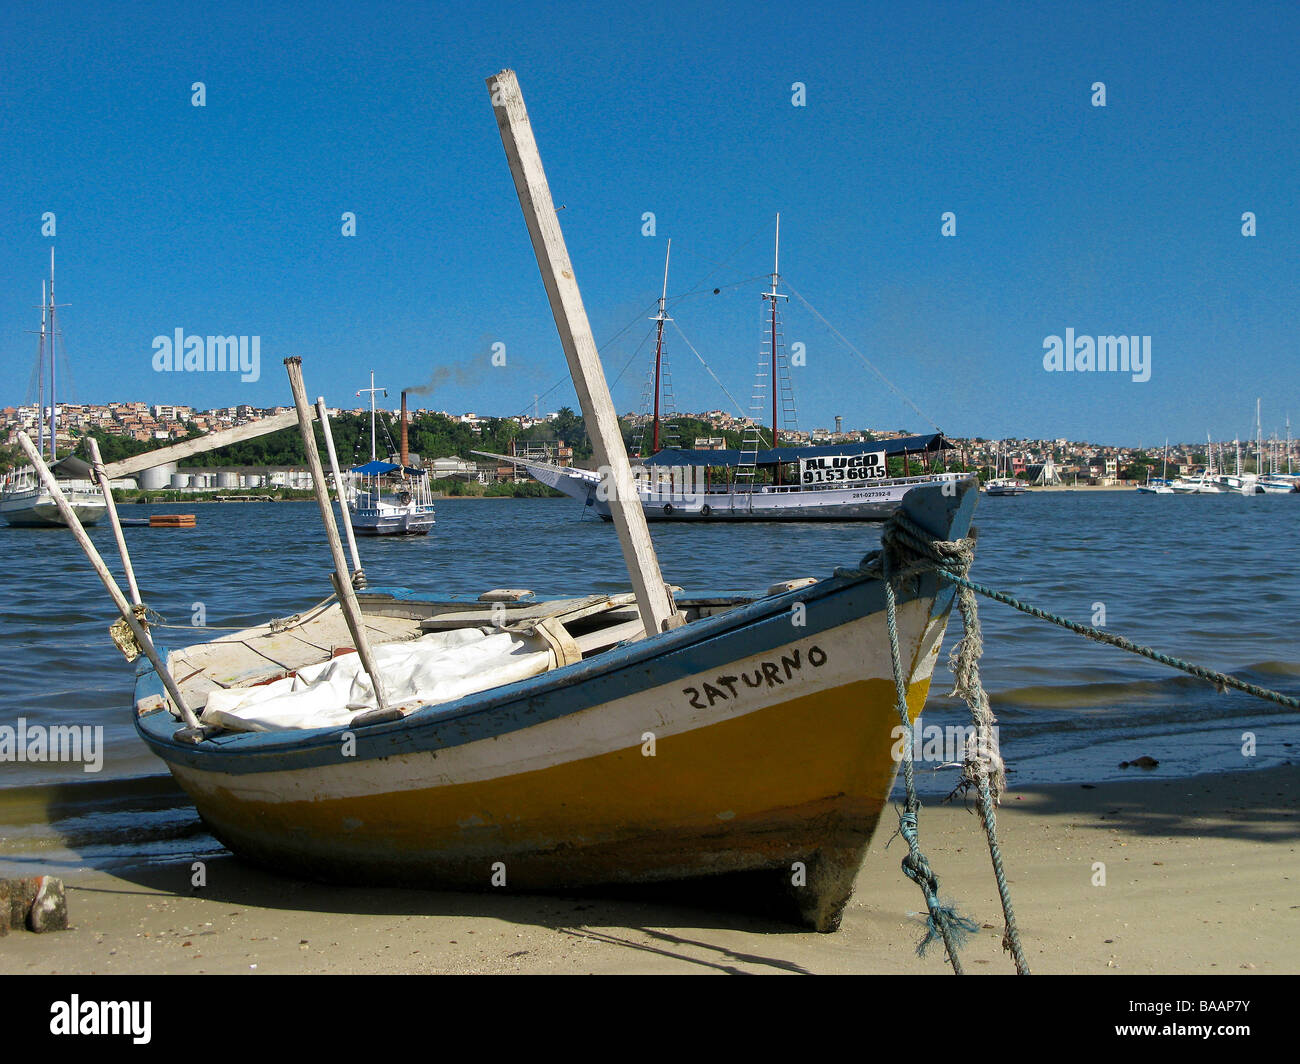 Boats at Porto da Barra beach, Salvador, Brazil Stock Photo